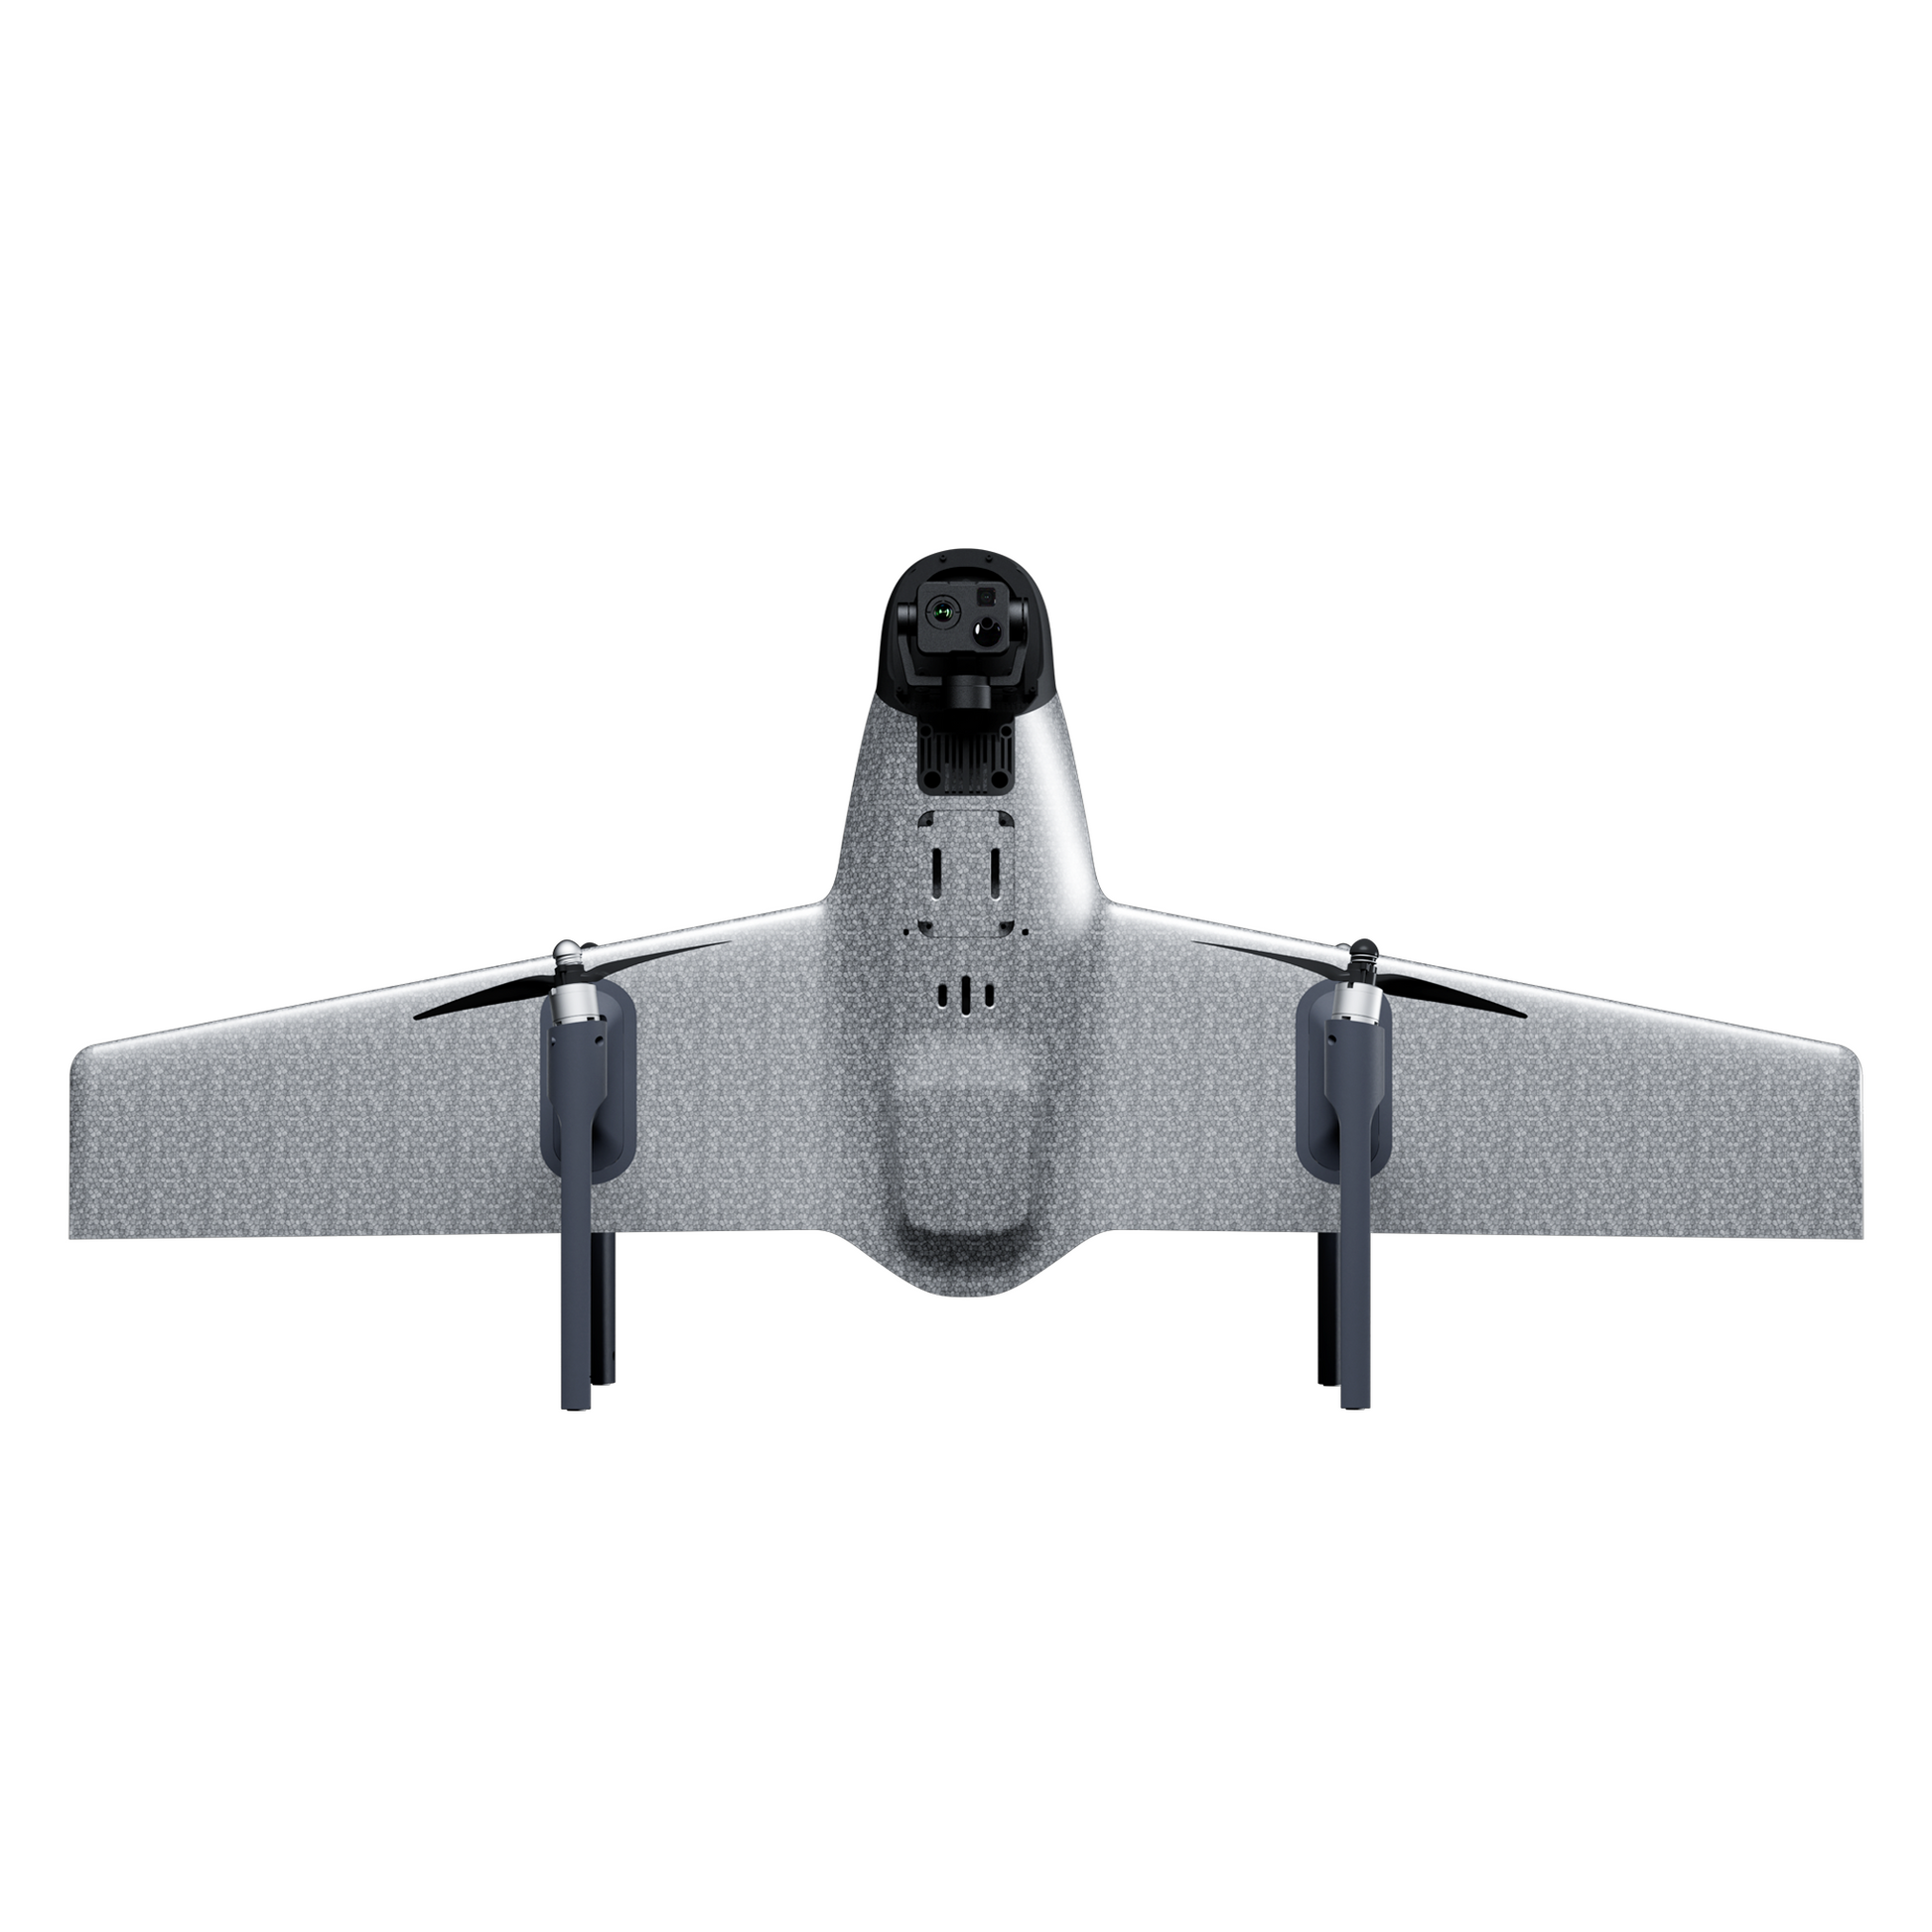 laser rangefinder drone